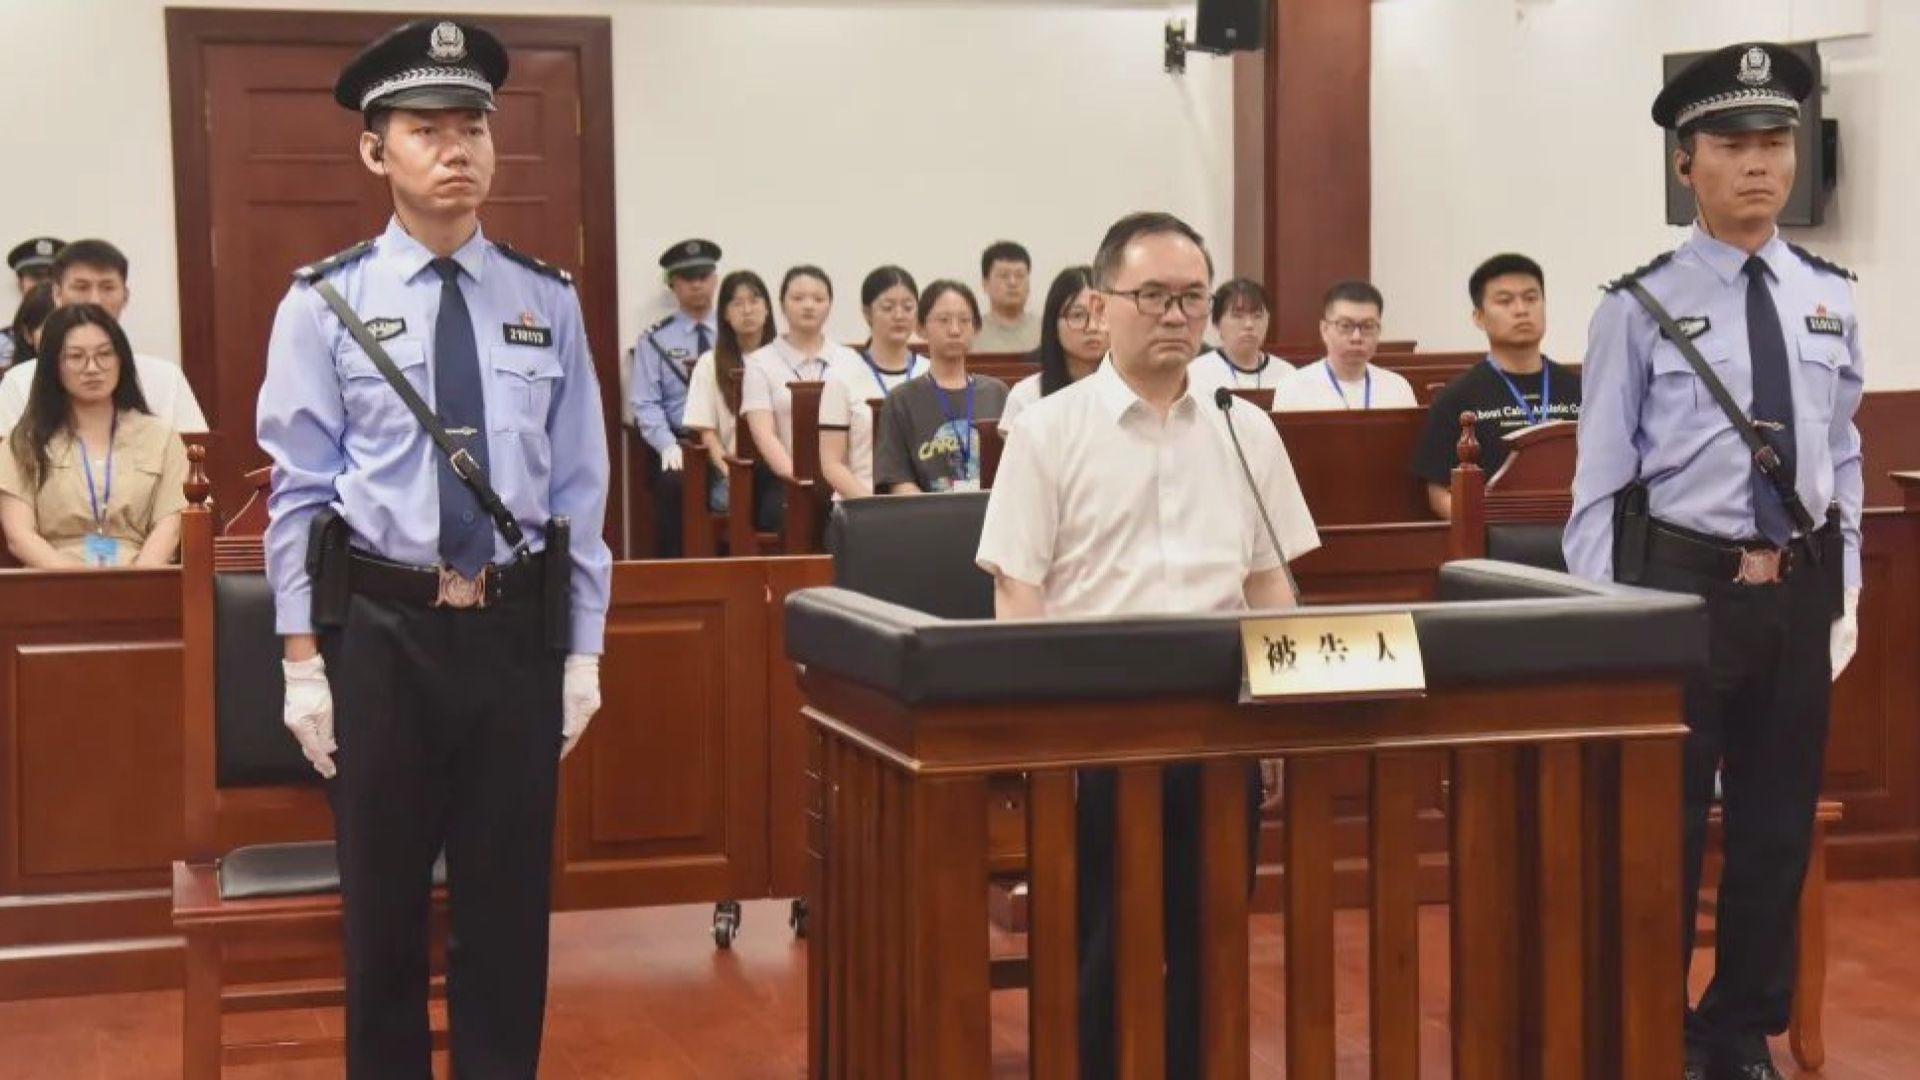 崔茂虎受賄案一審宣判處以有期徒刑11年 罰款150萬元人民幣